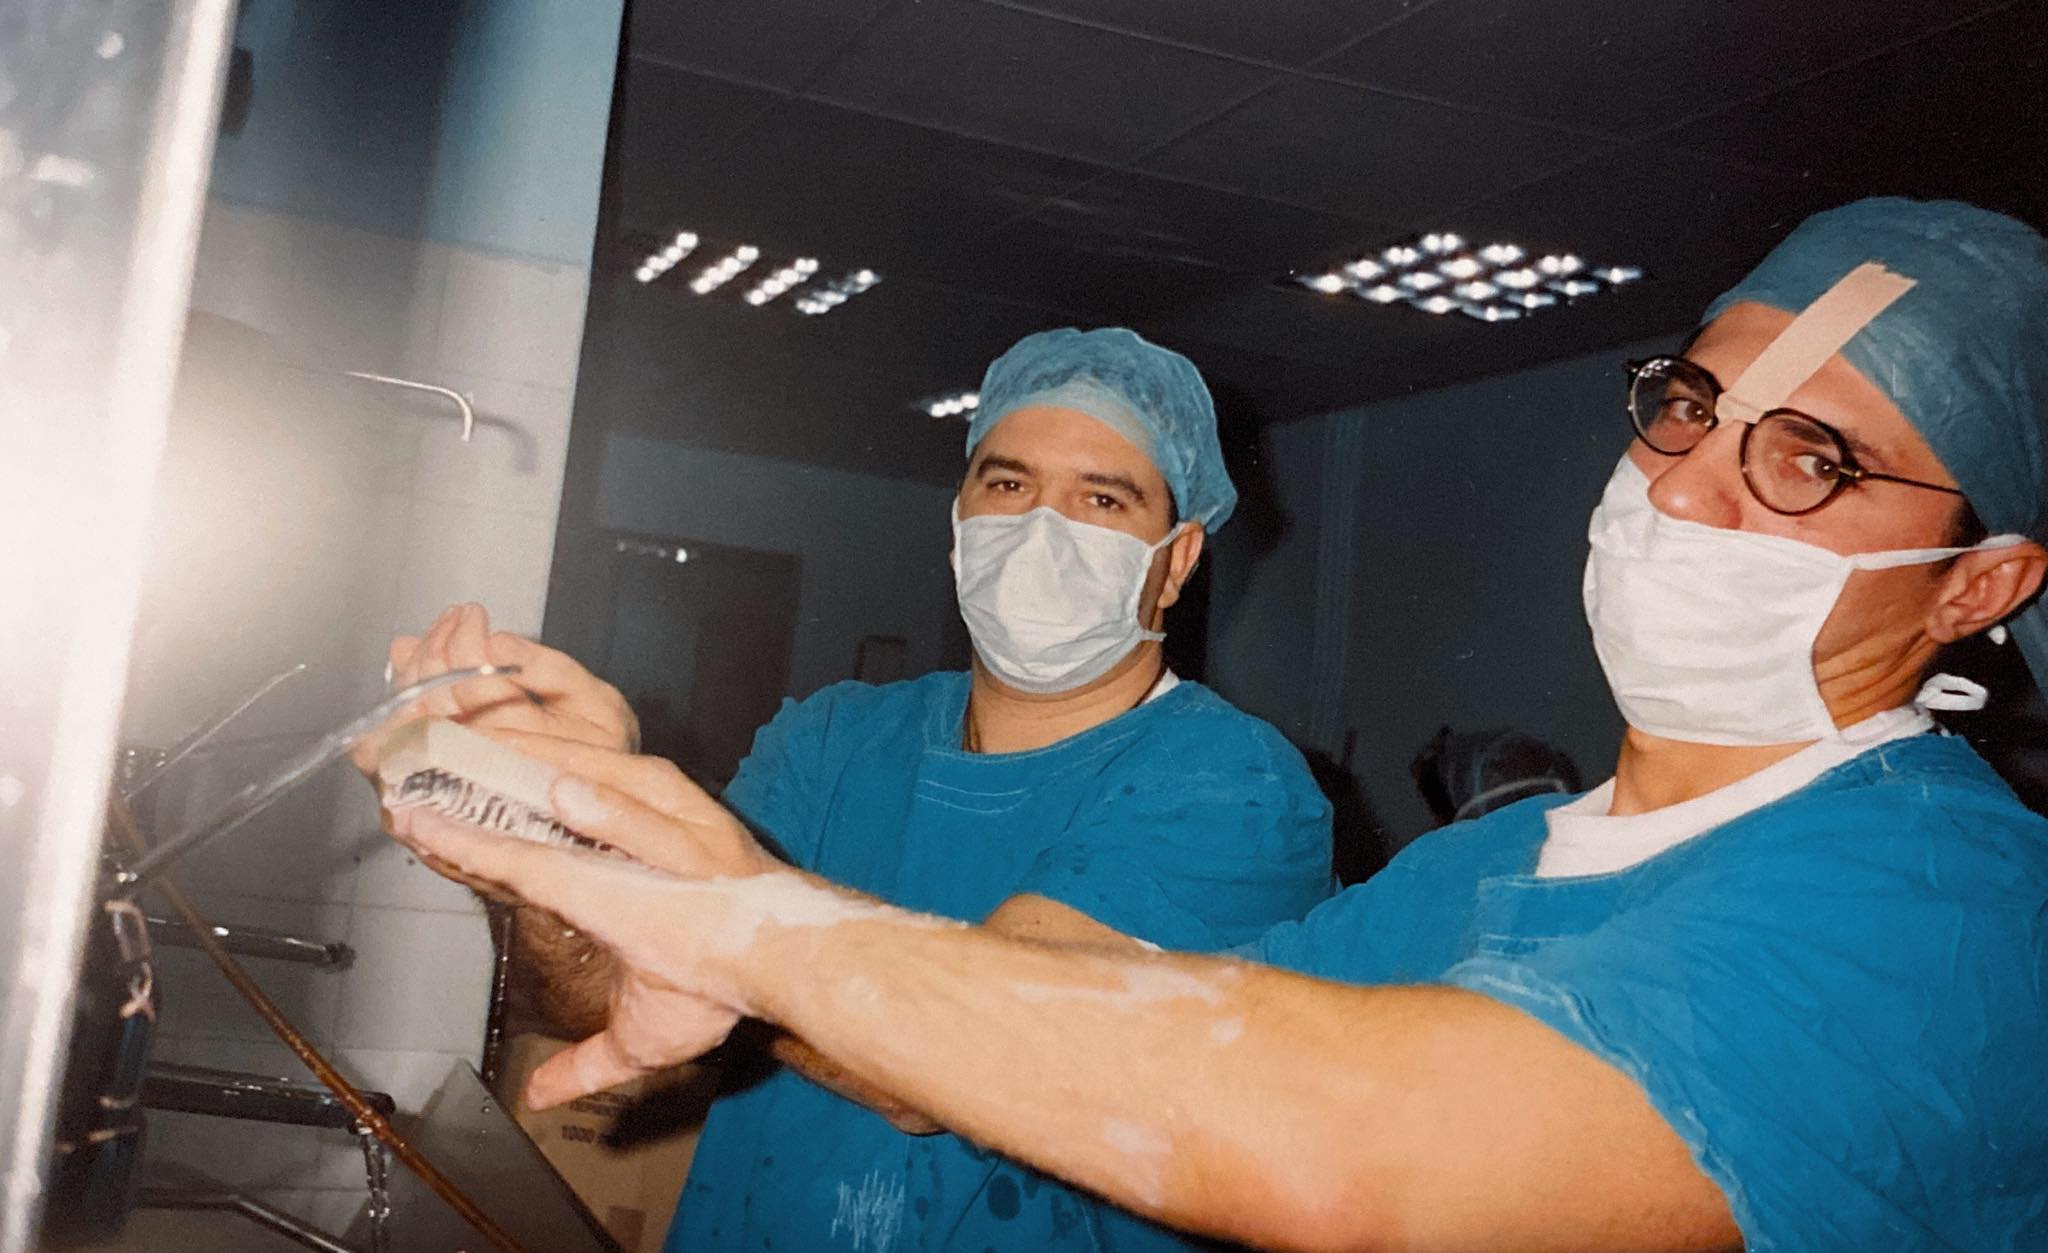 Προετοιμασία για εκπαιδευτικό χειρουργείο, Ειδικότητα στην Α' Χειρουργική Κλινική Νοσοκομείου Μεταξά, 1997